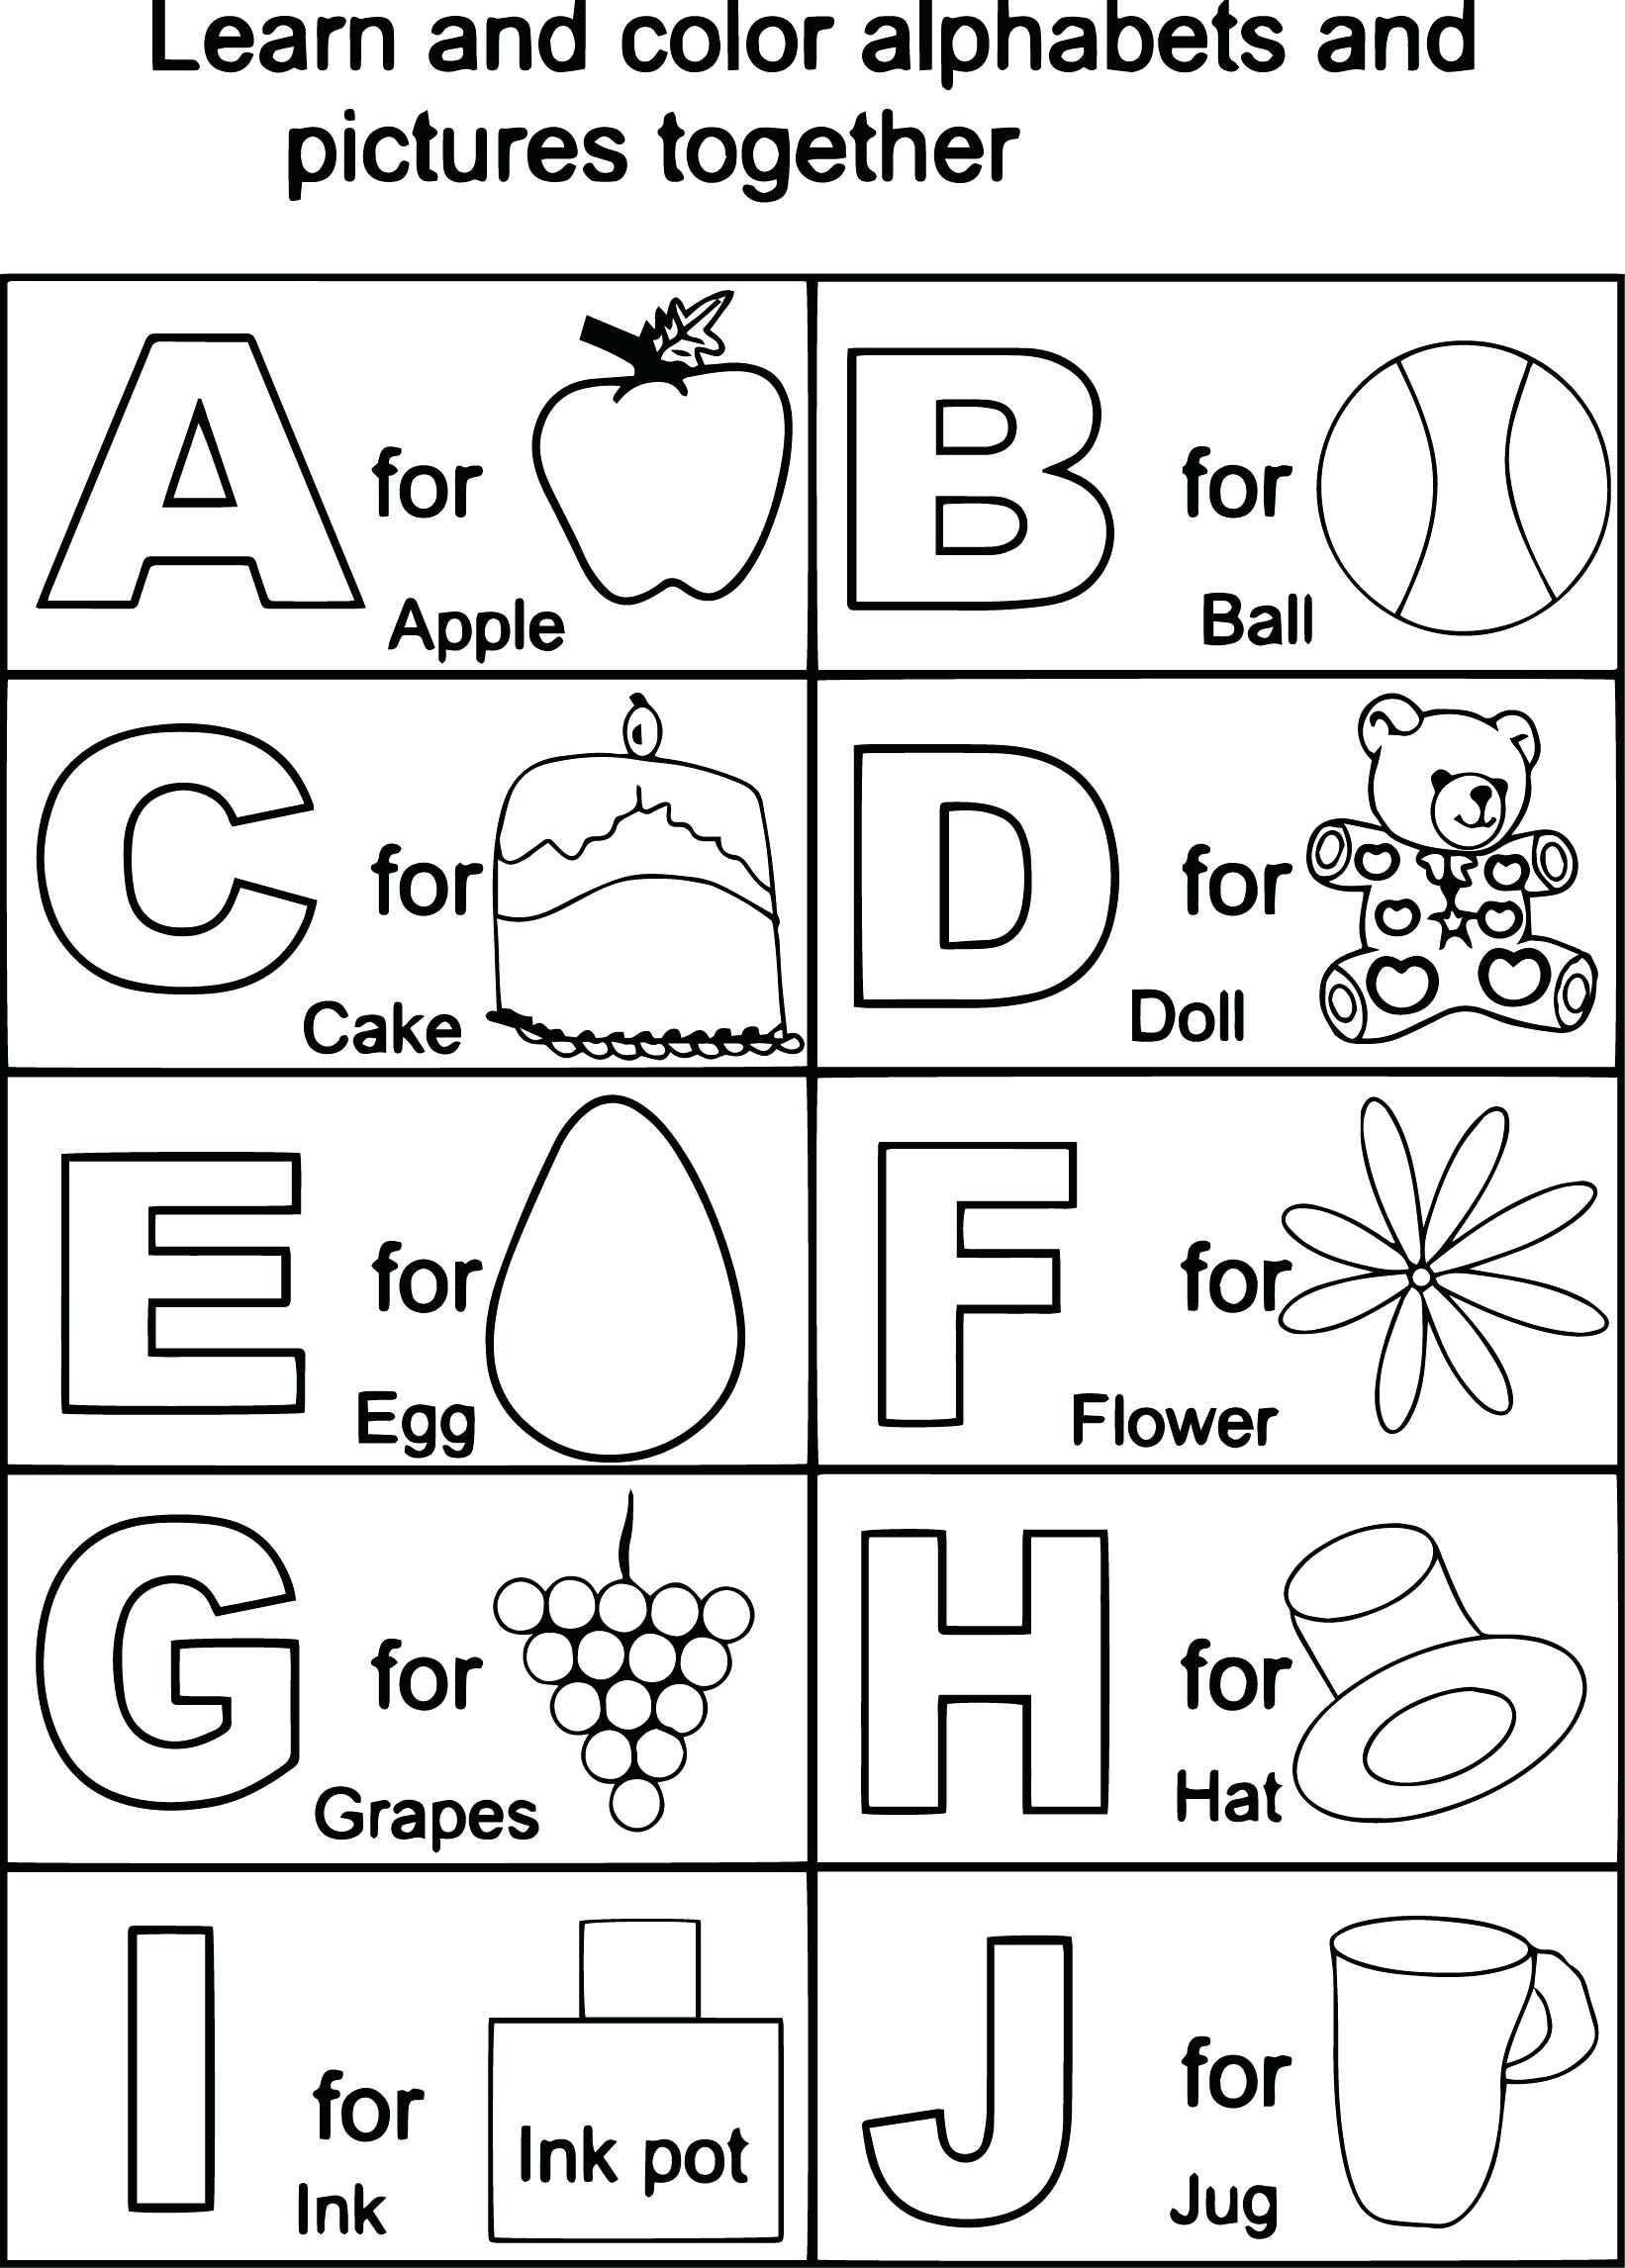 Alphabet Worksheets For Kindergarten Pdf All Of Printable for Alphabet Worksheets For Preschool Pdf